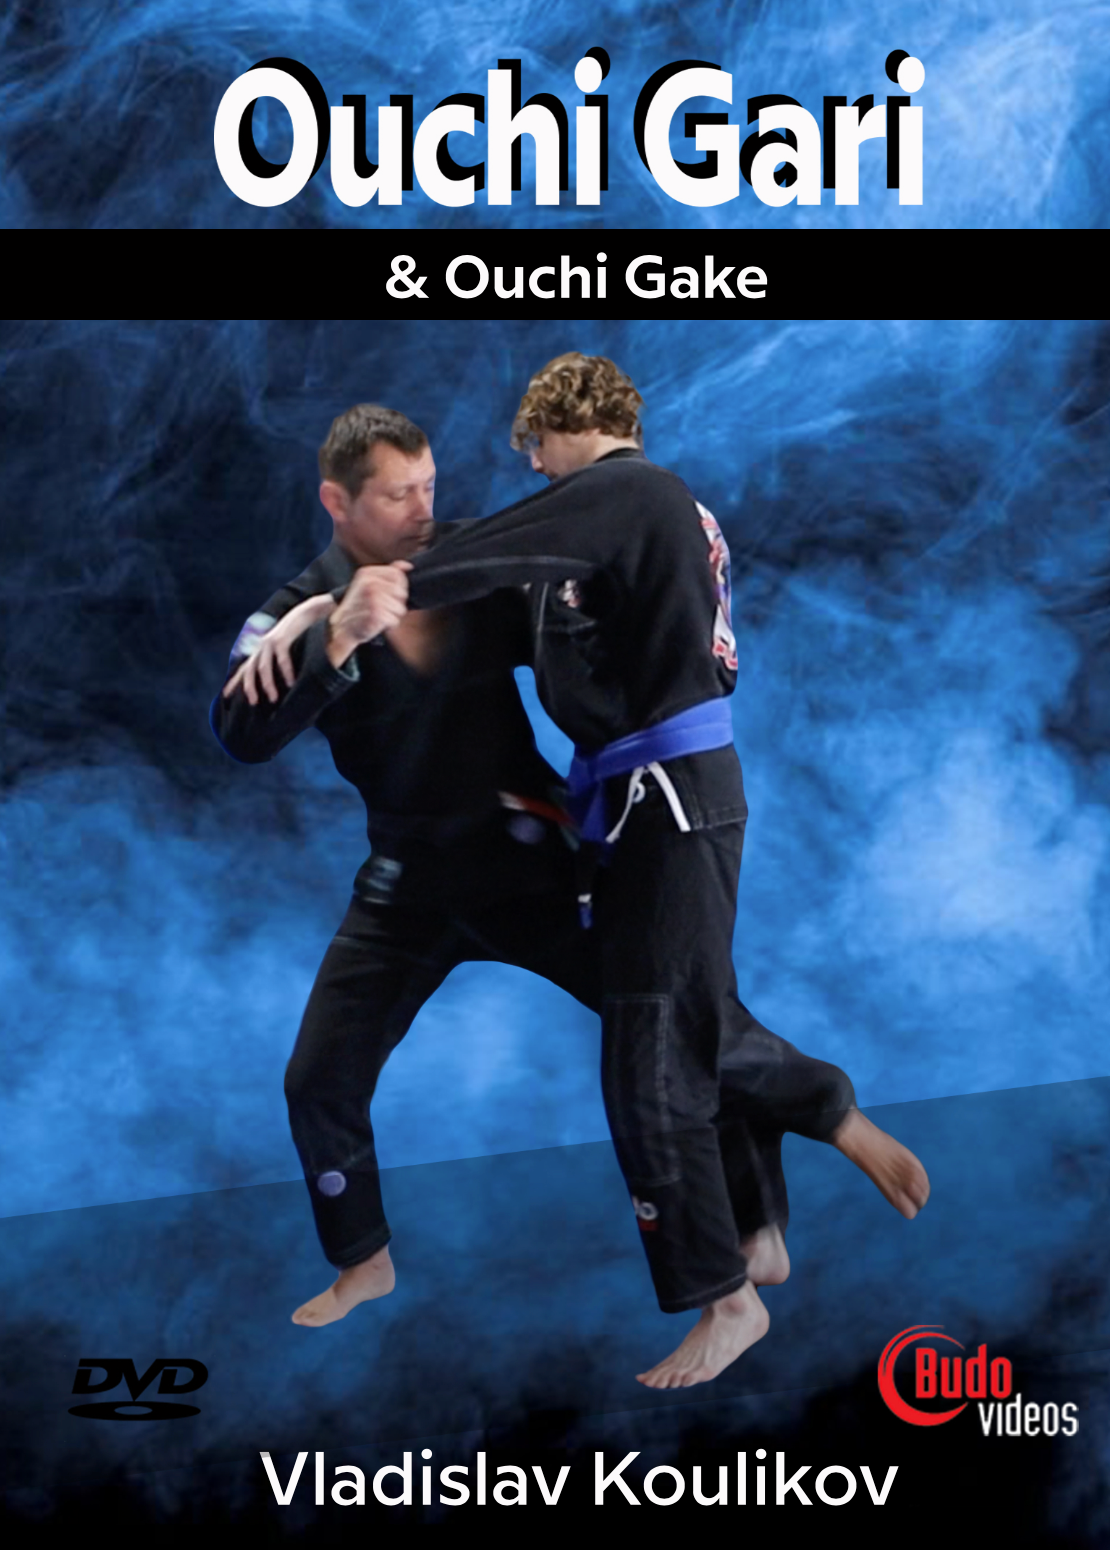 Ouchi Gari & Ouchi Gake DVD by Vladislav Koulikov